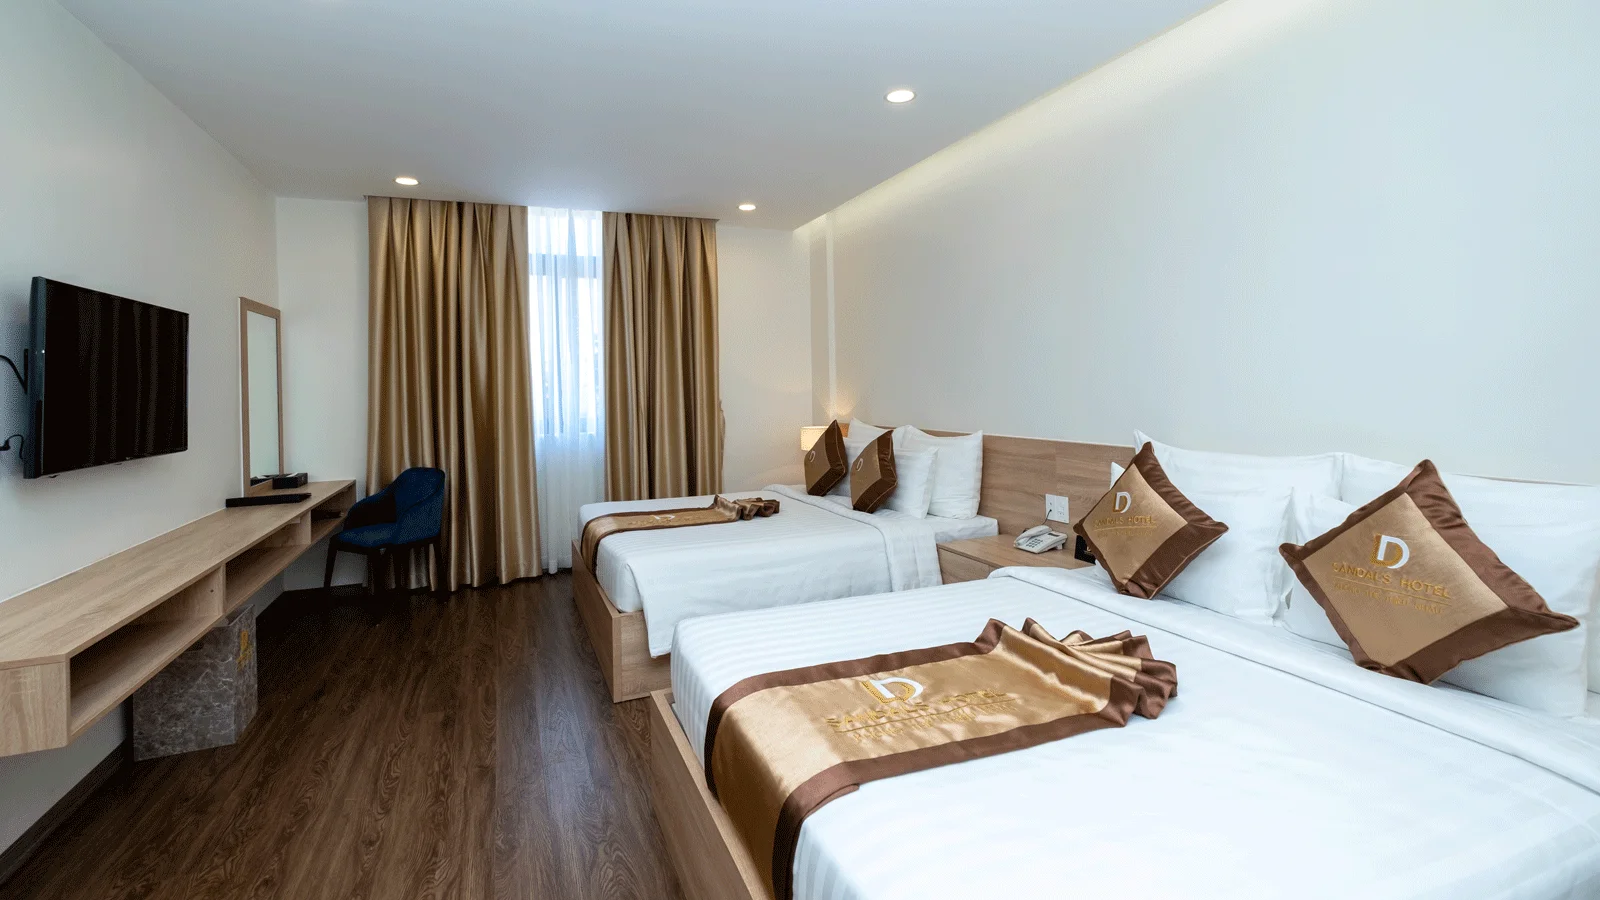 Khách sạn Sandals Star Hotel Lâm Đồng